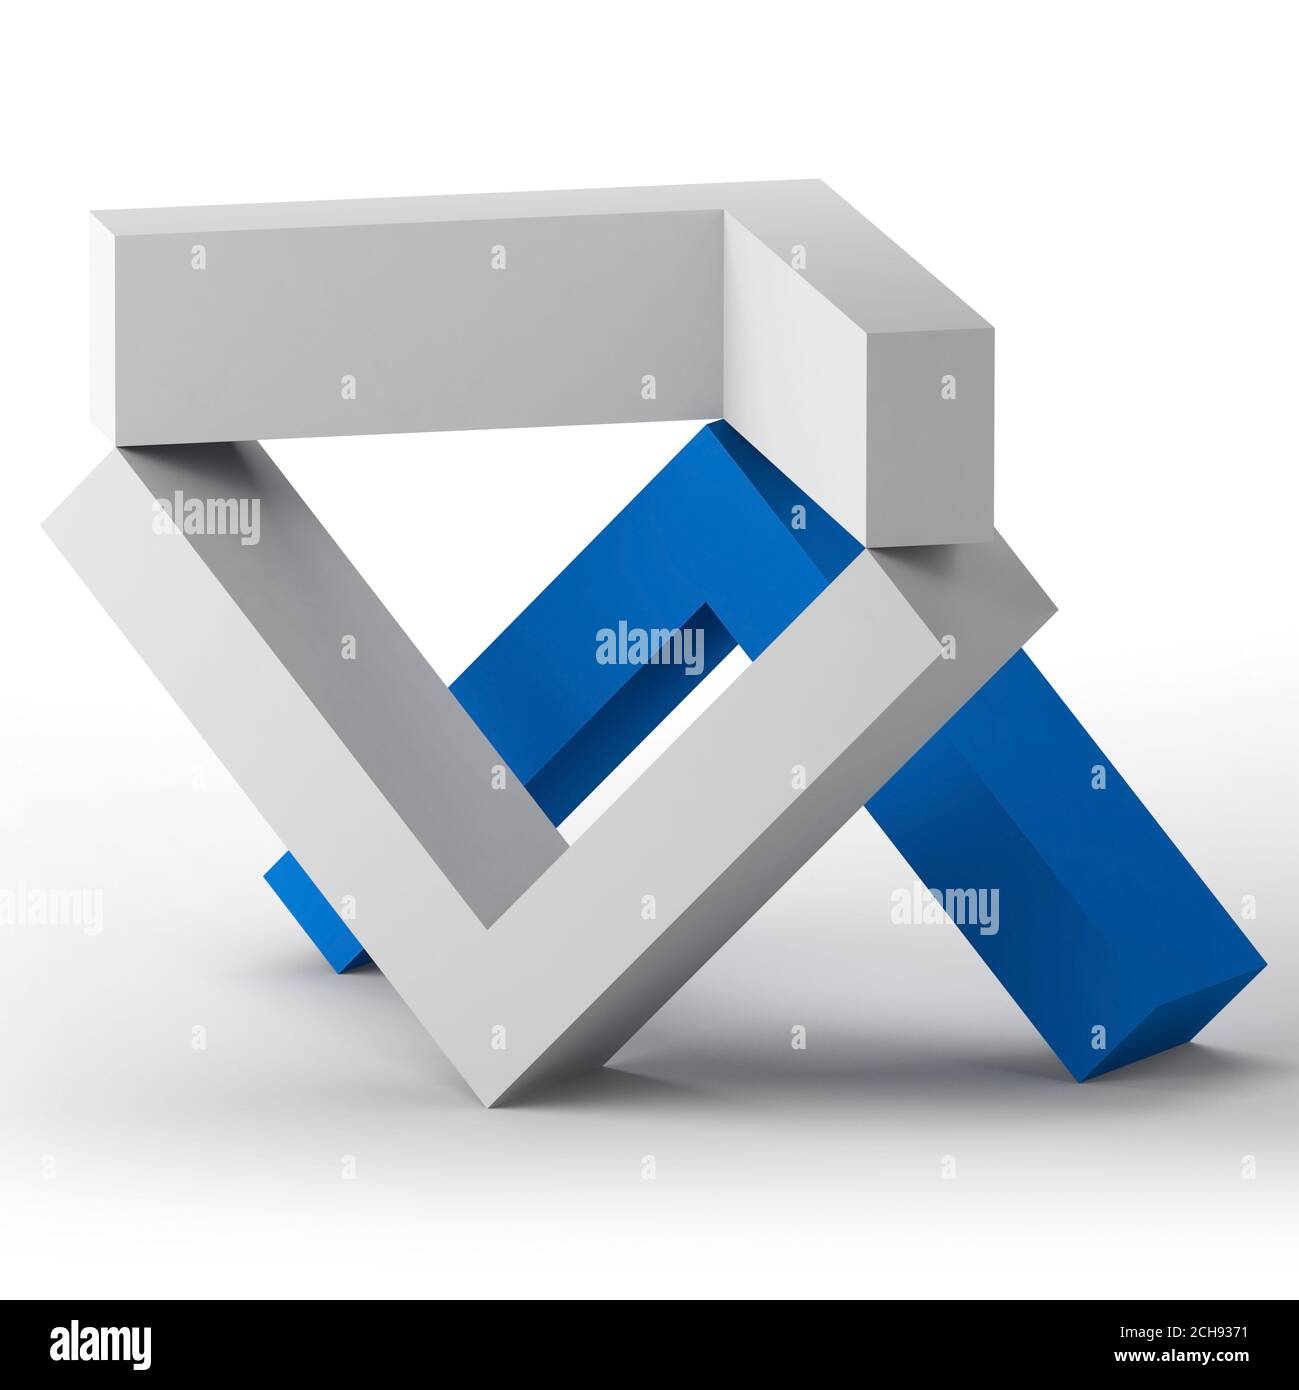 Abstrakte Gleichgewicht Stillleben Installation mit Ecken stehen auf weißem Hintergrund. 3d-Rendering-Illustration Stockfoto